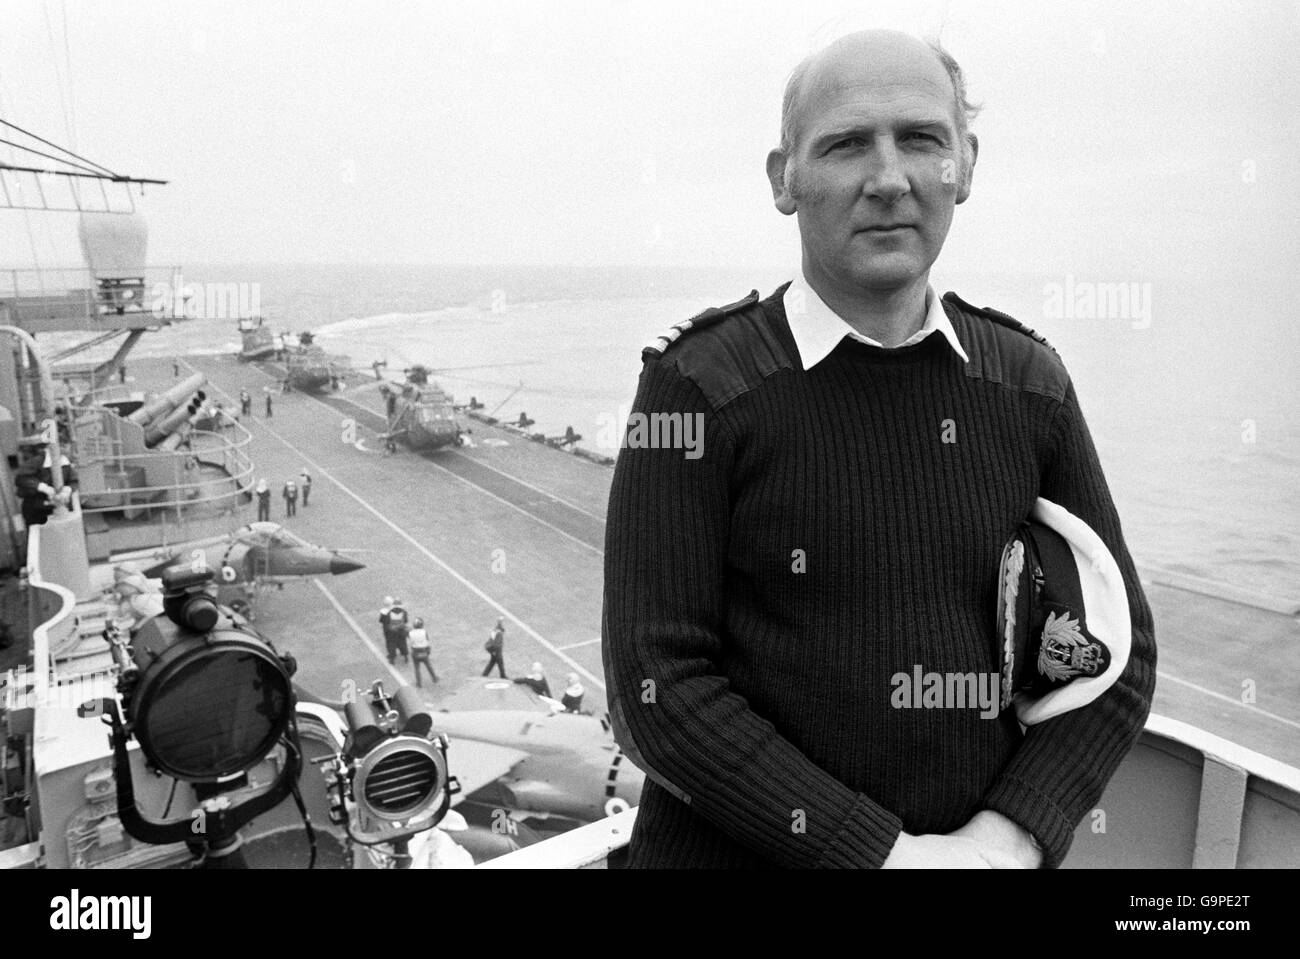 Commander John Lock, Executive Officer des Flugzeugträgers HMS Hermes, dem britischen Flaggschiff der Marine-Einsatztruppe, die nach der argentinischen Invasion nach Süden auf die Falklandinseln aufbrechen wird. Stockfoto